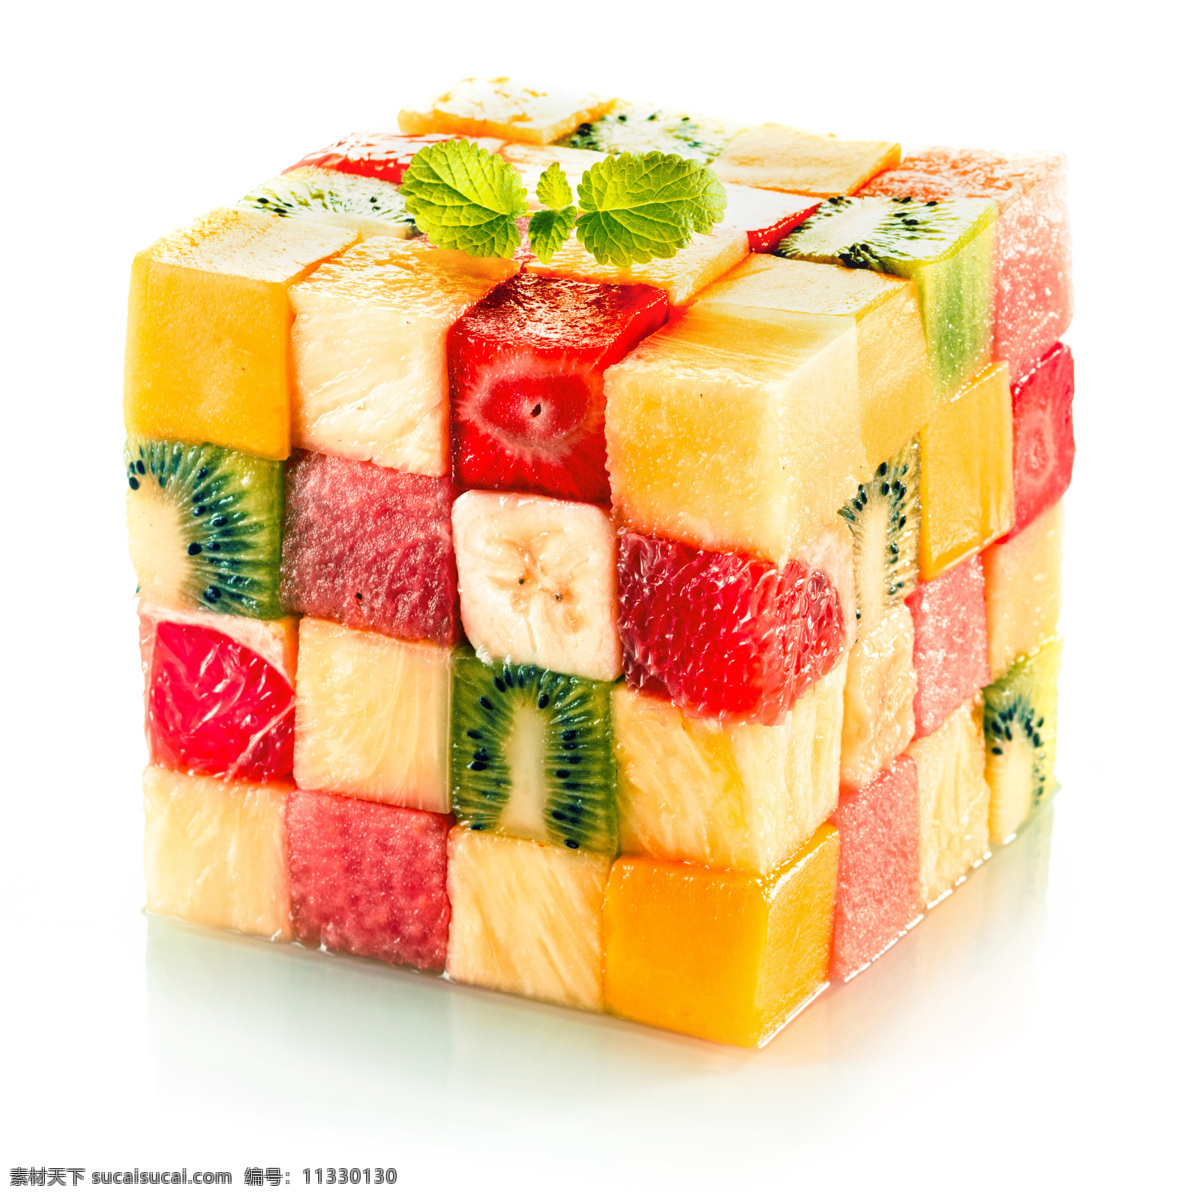 水果魔方 创意水果 新鲜水果 美味水果 果实 水果摄影 水果蔬菜 餐饮美食 白色